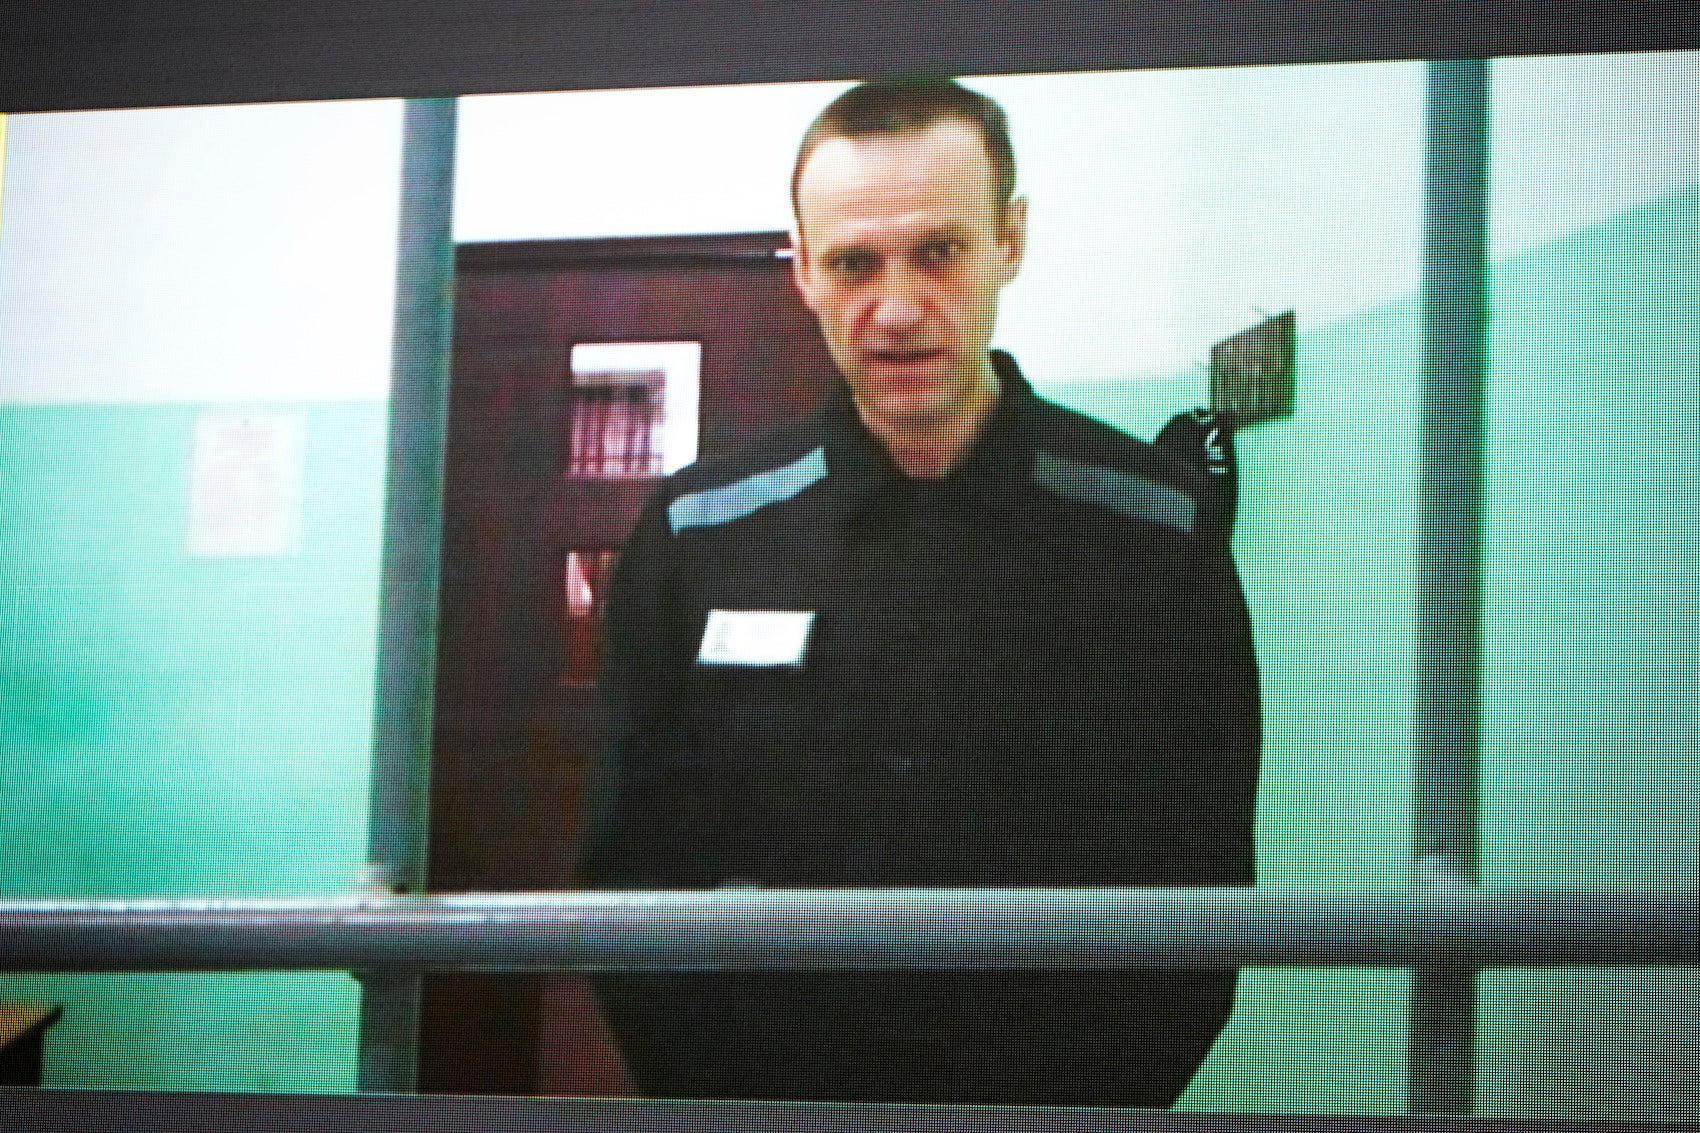 Le leader de l'opposition russe Alexeï Navalny, incarcéré dans la colonie pénitentiaire Melekhovo (région de Vladimir), participait à distance a une audience tenue à la Cour suprême russe à Moscou, le 22 juin 2023. La liaison vidéo était fournie par le Service pénitentiaire fédéral russe.